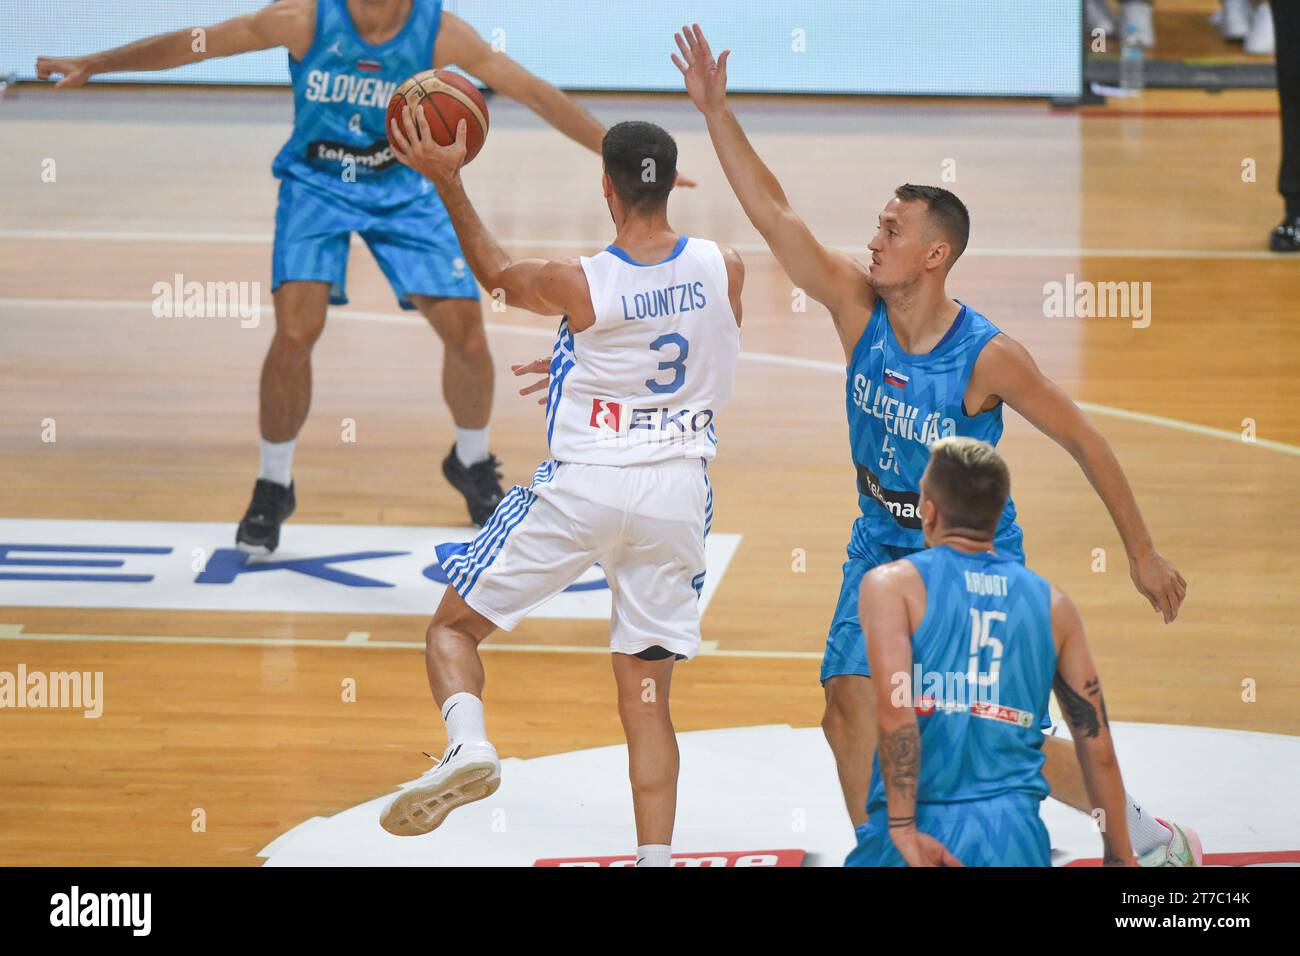 Michalis Lountzis (équipe nationale de Grèce de basket-ball) contre la Slovénie Banque D'Images